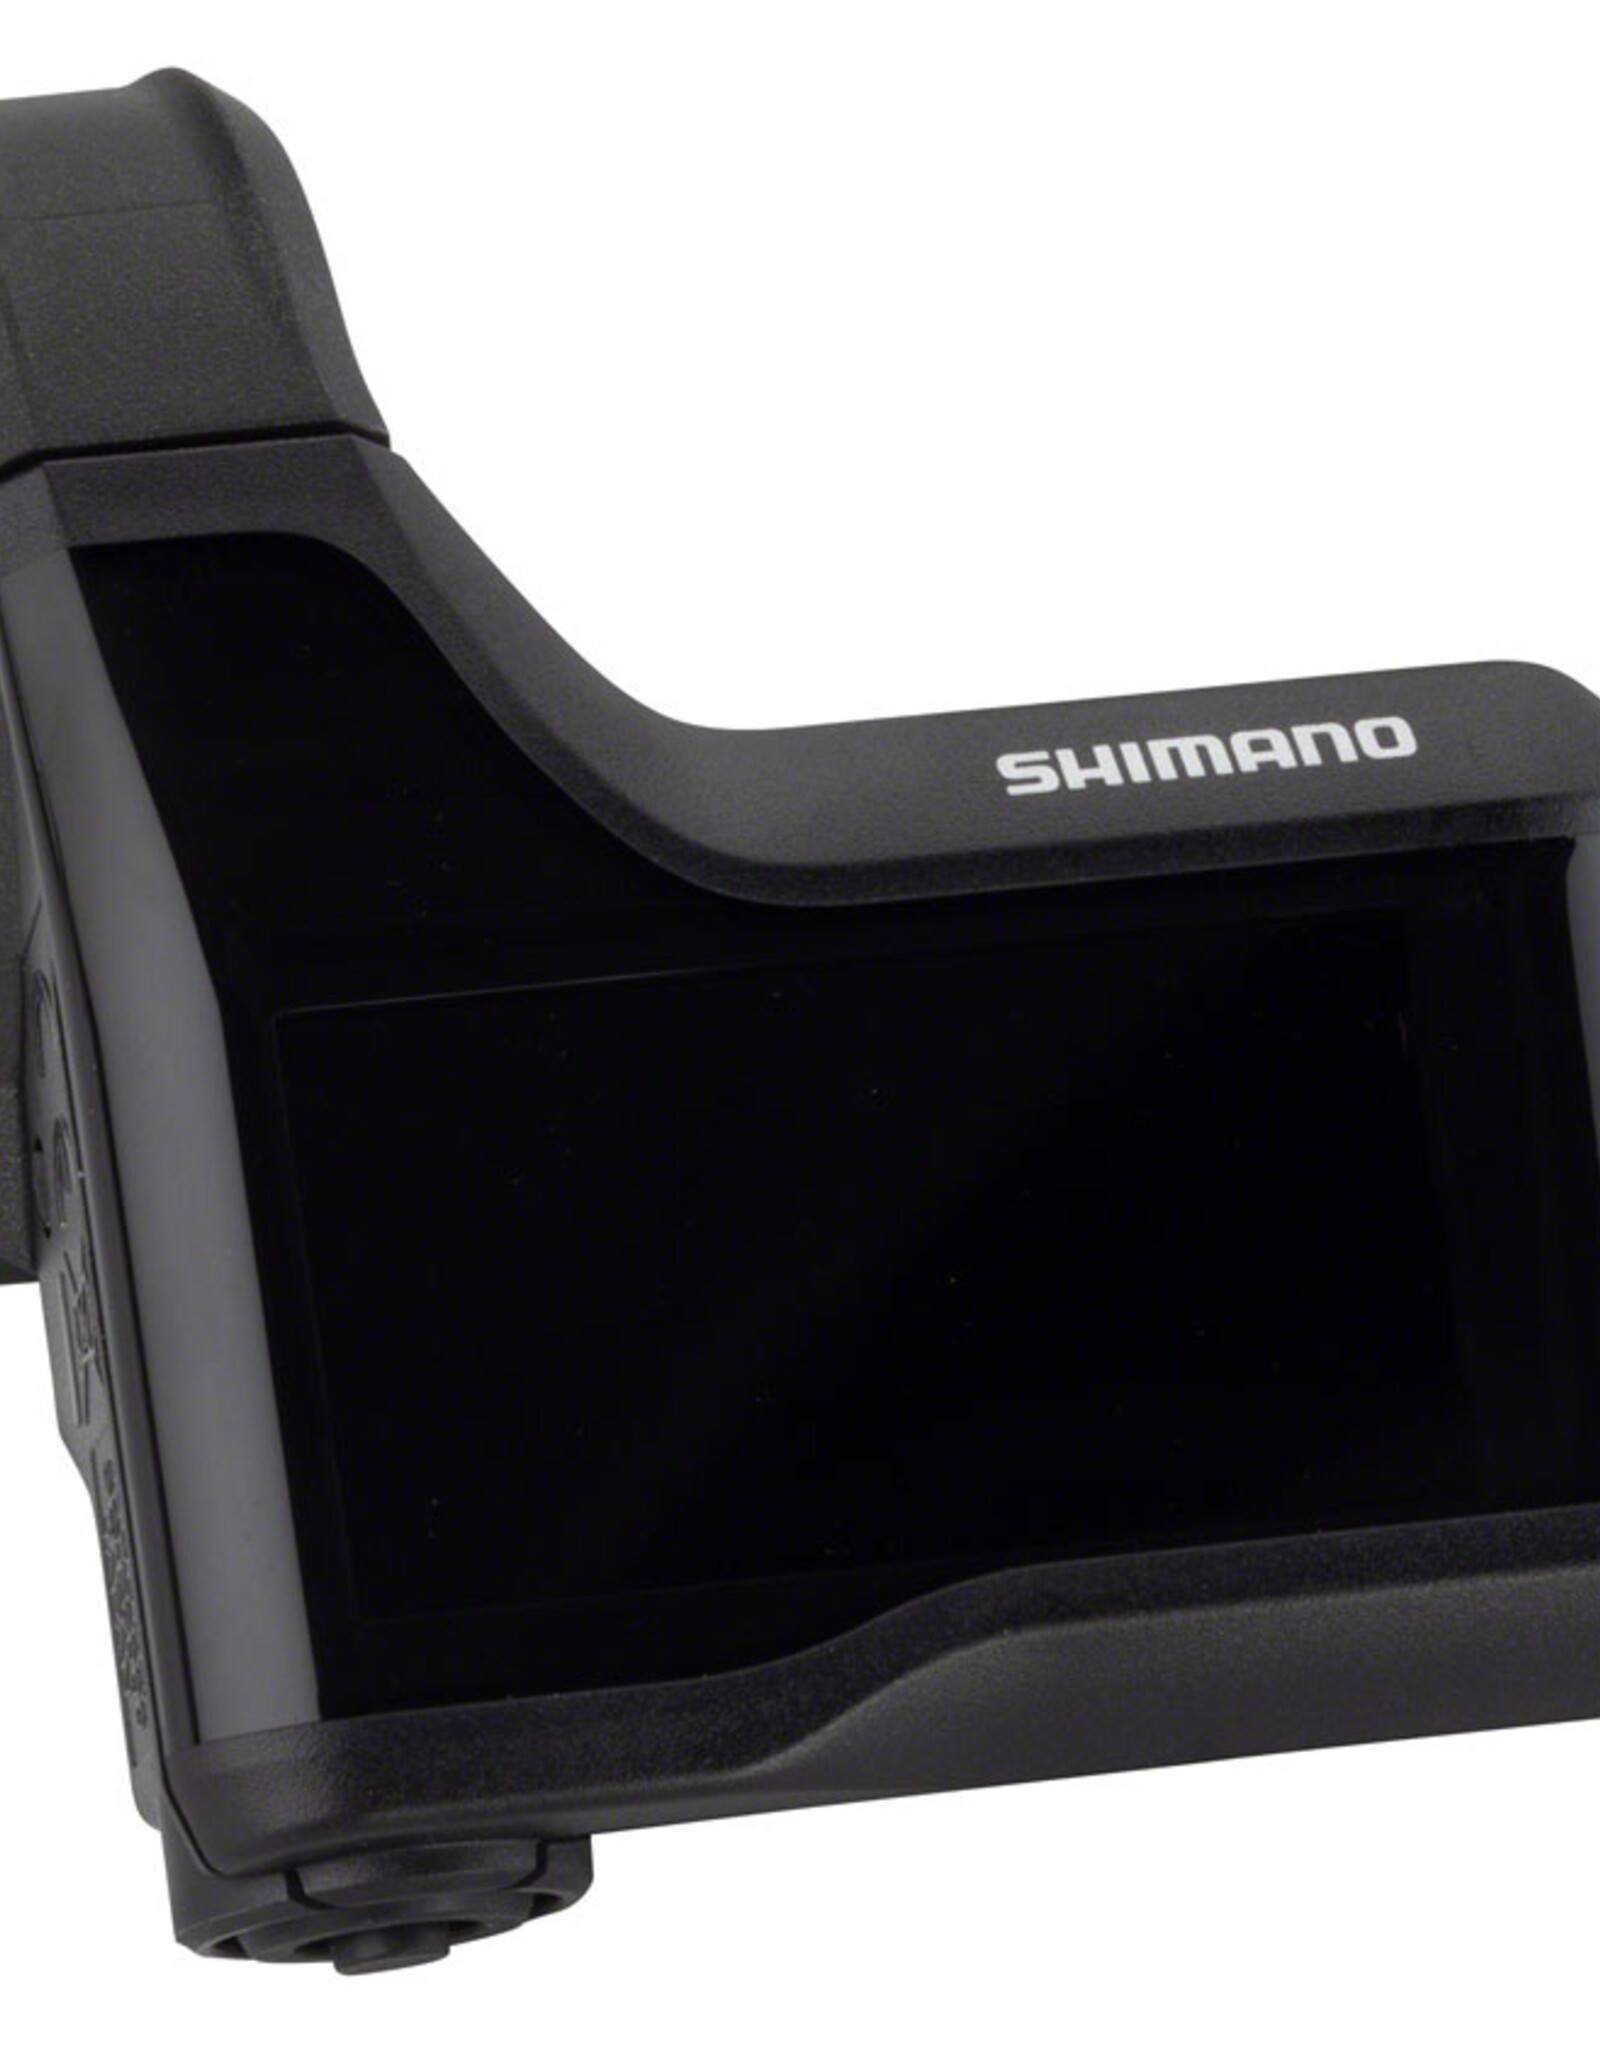 Shimano Shimano STEPS SC-E8000 Display with clamps for 31.8 and 35.0 handlebars